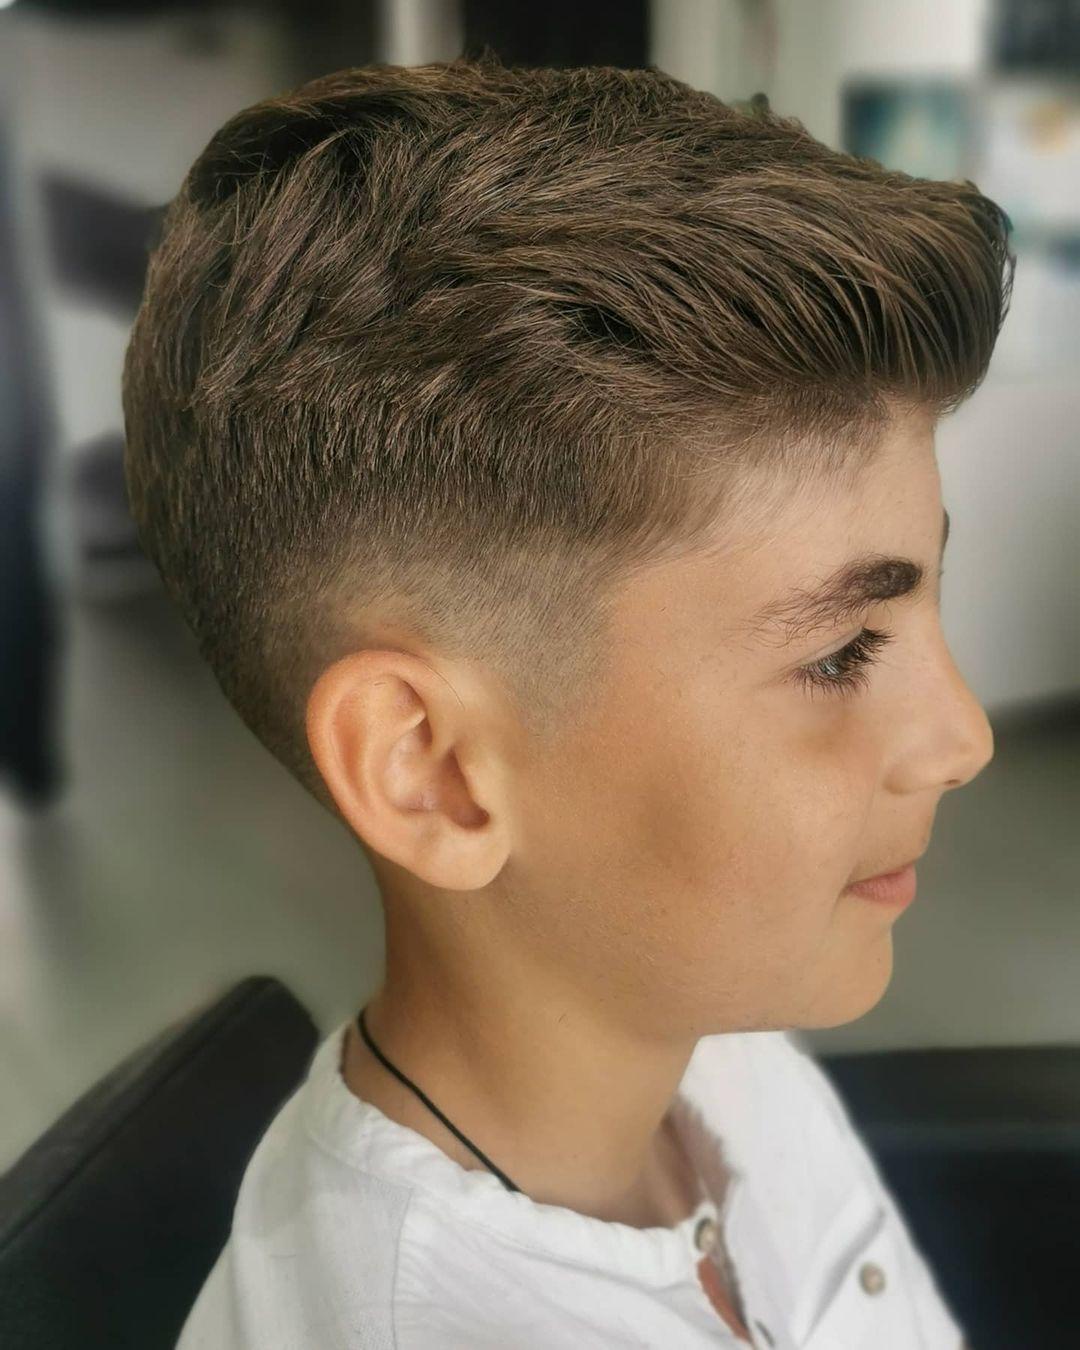 Fade haircut styles for kids - Tuko.co.ke